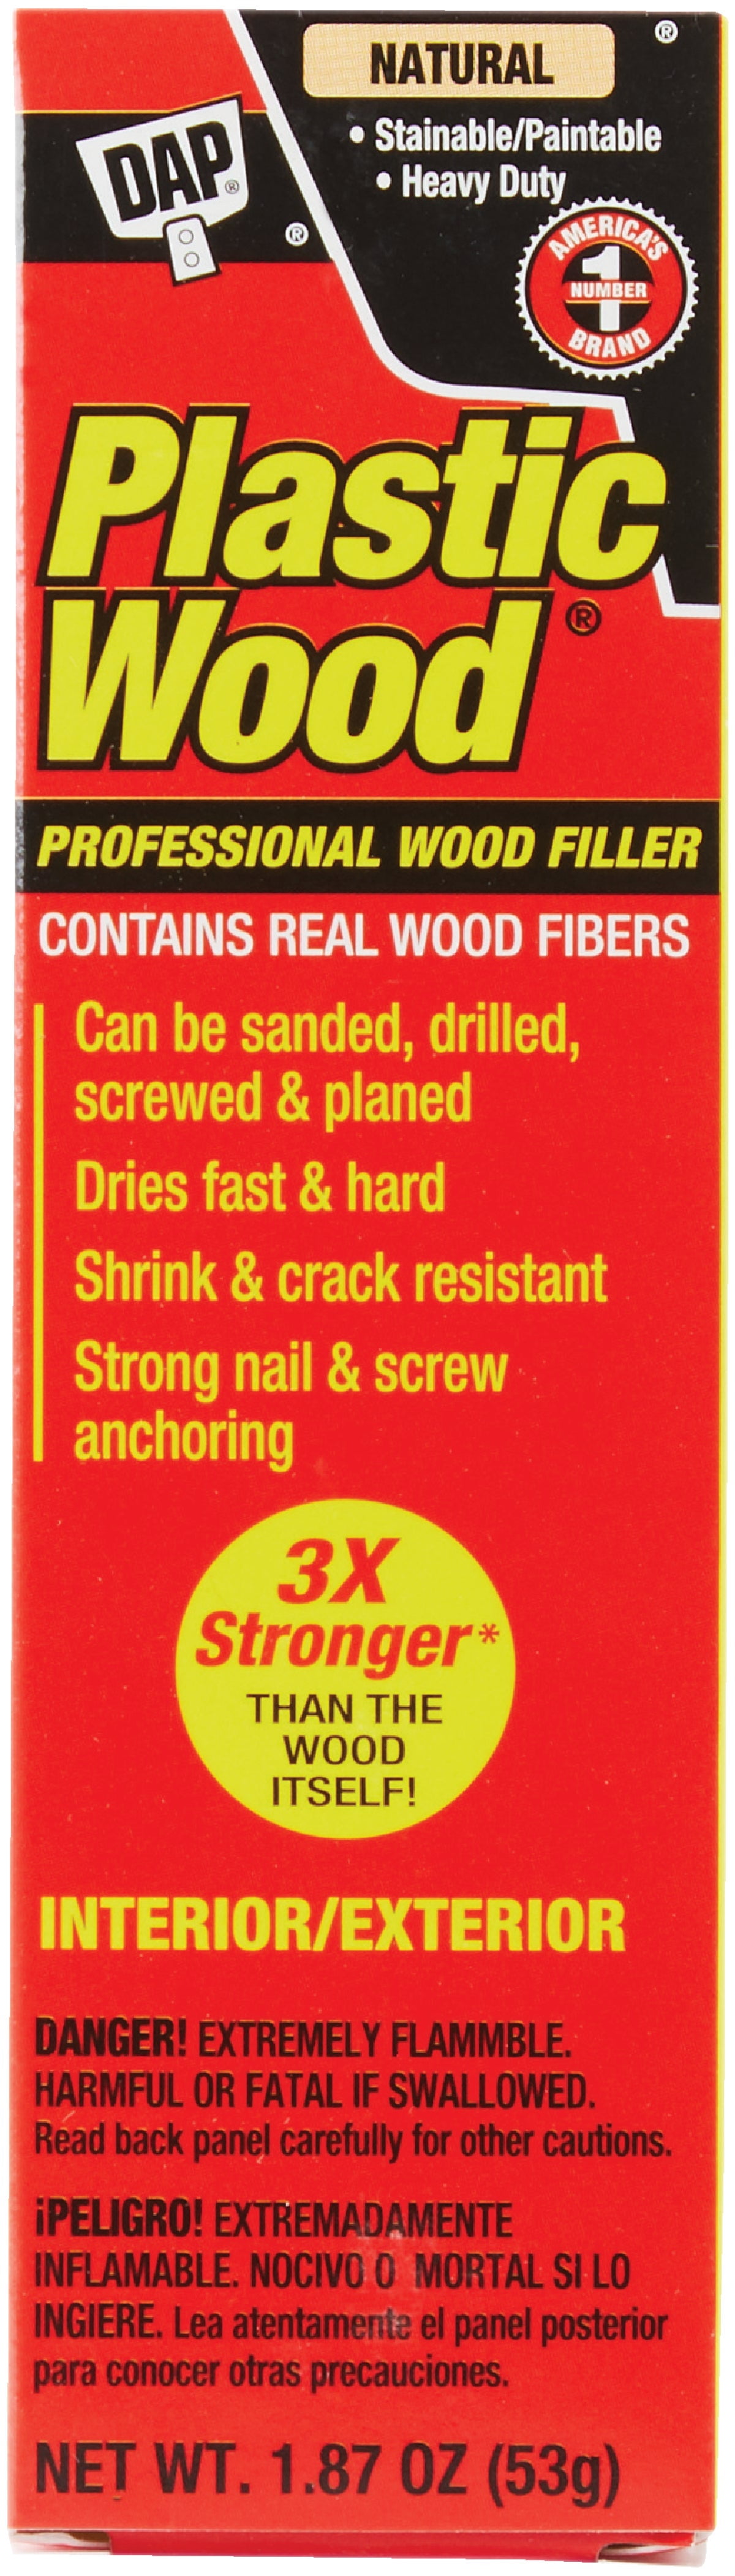 Buy Dap Plastic Wood Professional Wood Filler Natural, 1.8 Oz.